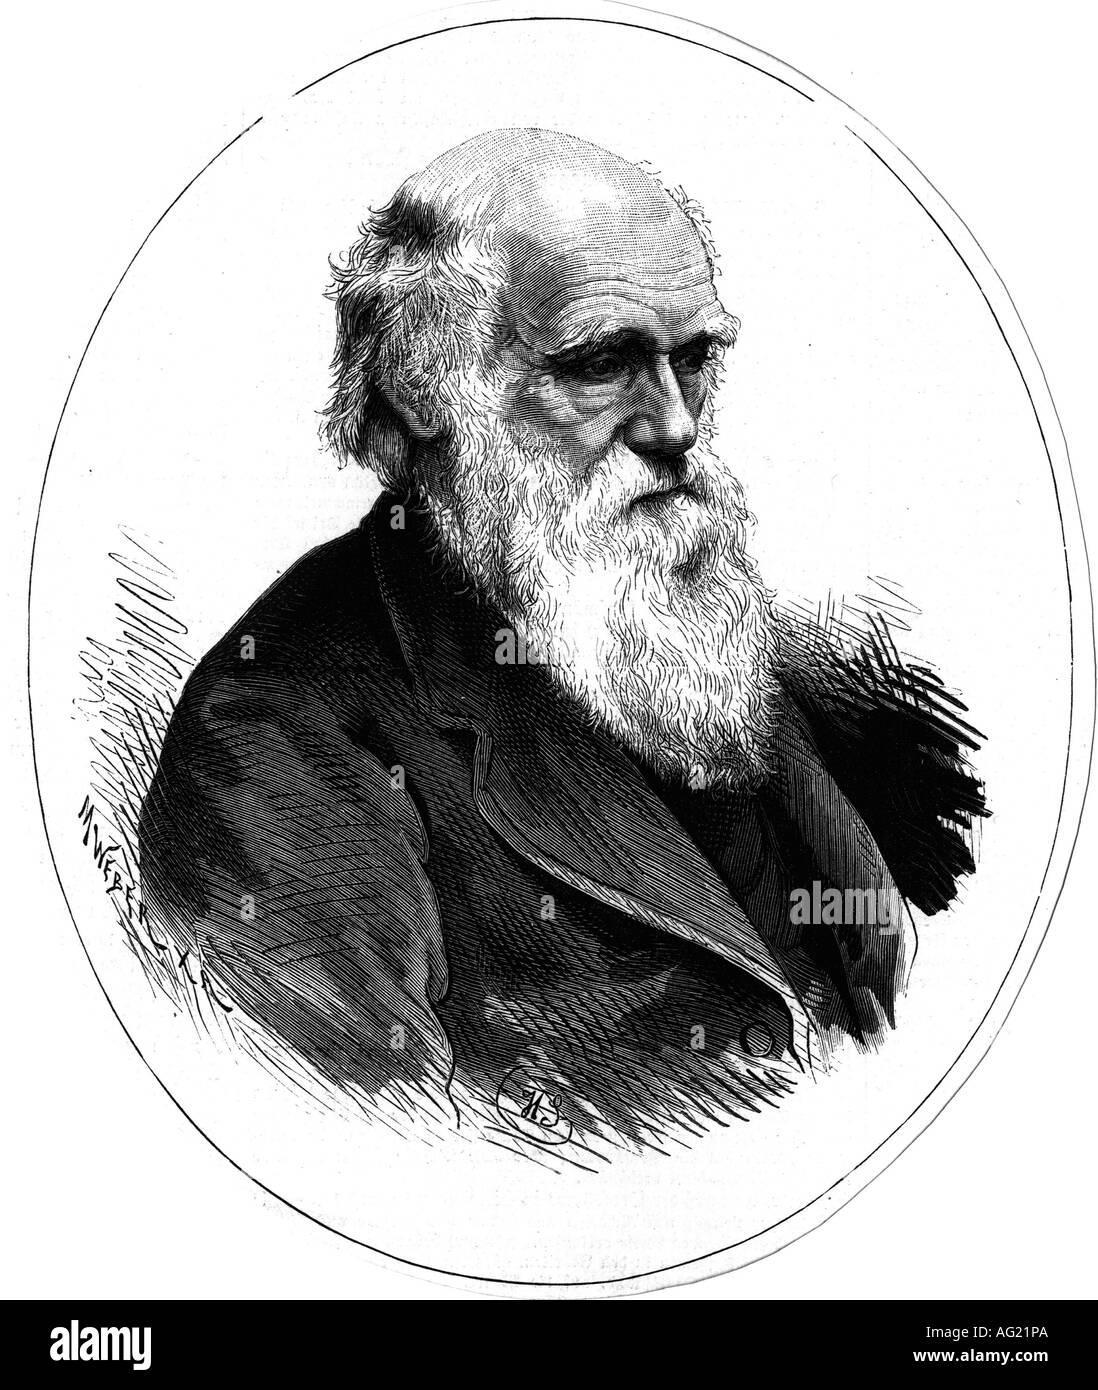 Darwin, Charles Robert, 12.2.1809 - 19.4.1882, naturalista britannico, ritratto, incisione del legno, dopo un disegno di M. Weber, pubblicato nel 1882, Foto Stock